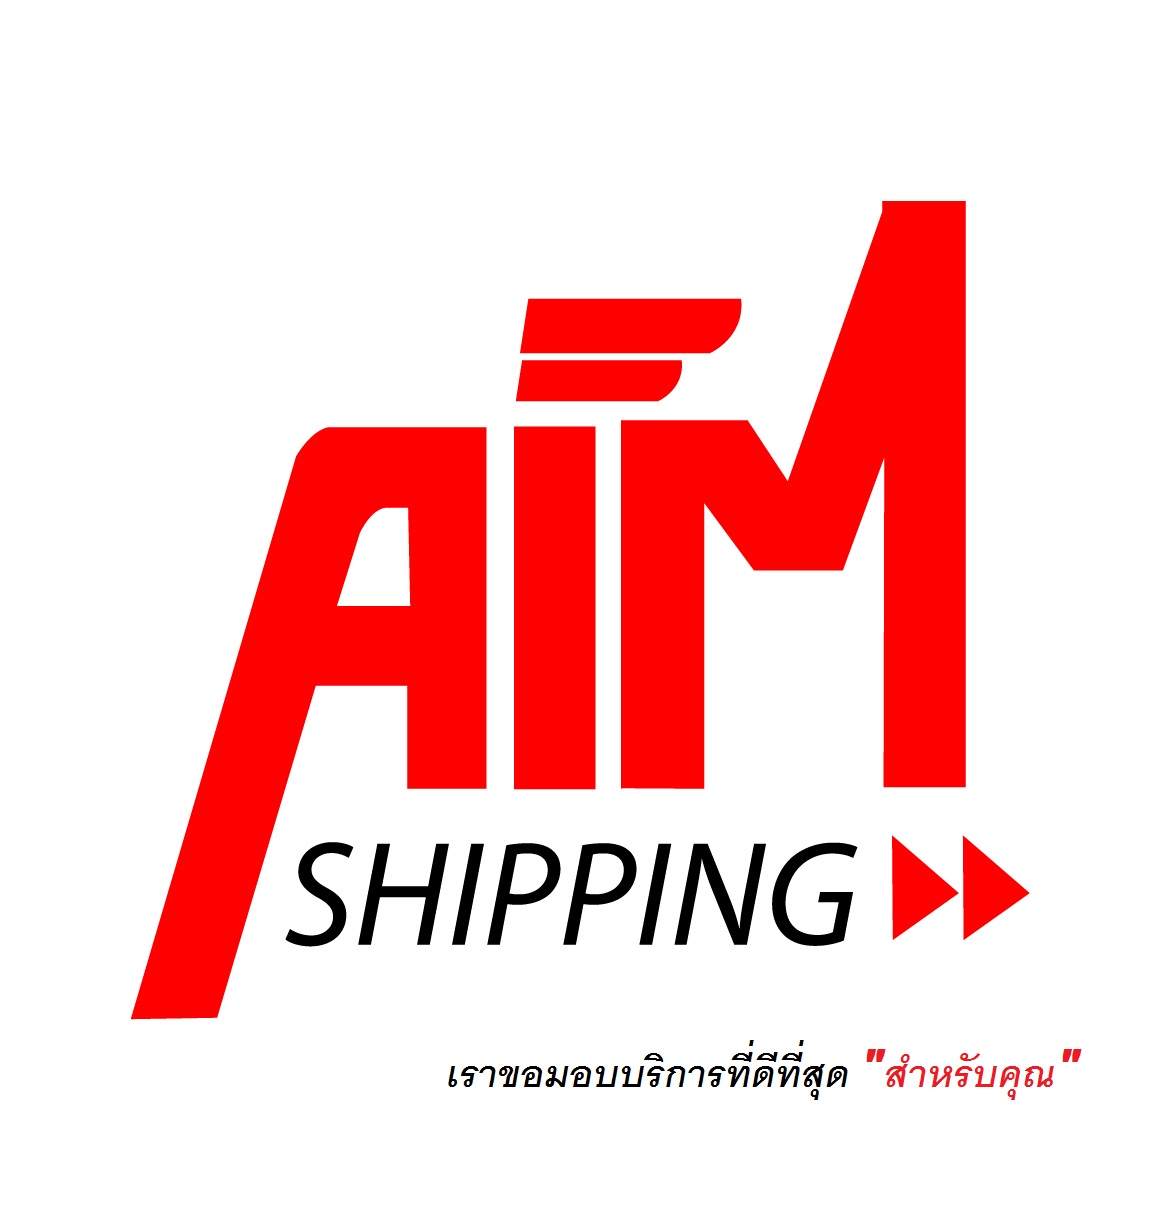 AIM SHIPPING บริการรับส่งเอกสาร และ พัสดุ ครอบคลุมทั้งในประเทศและต่างประเทศ การรันตีความน่าเชื่อถือผ่าน COURIER DHL สอบถามข้อมูลเพิ่มเติม 02-454-2214 รูปที่ 1